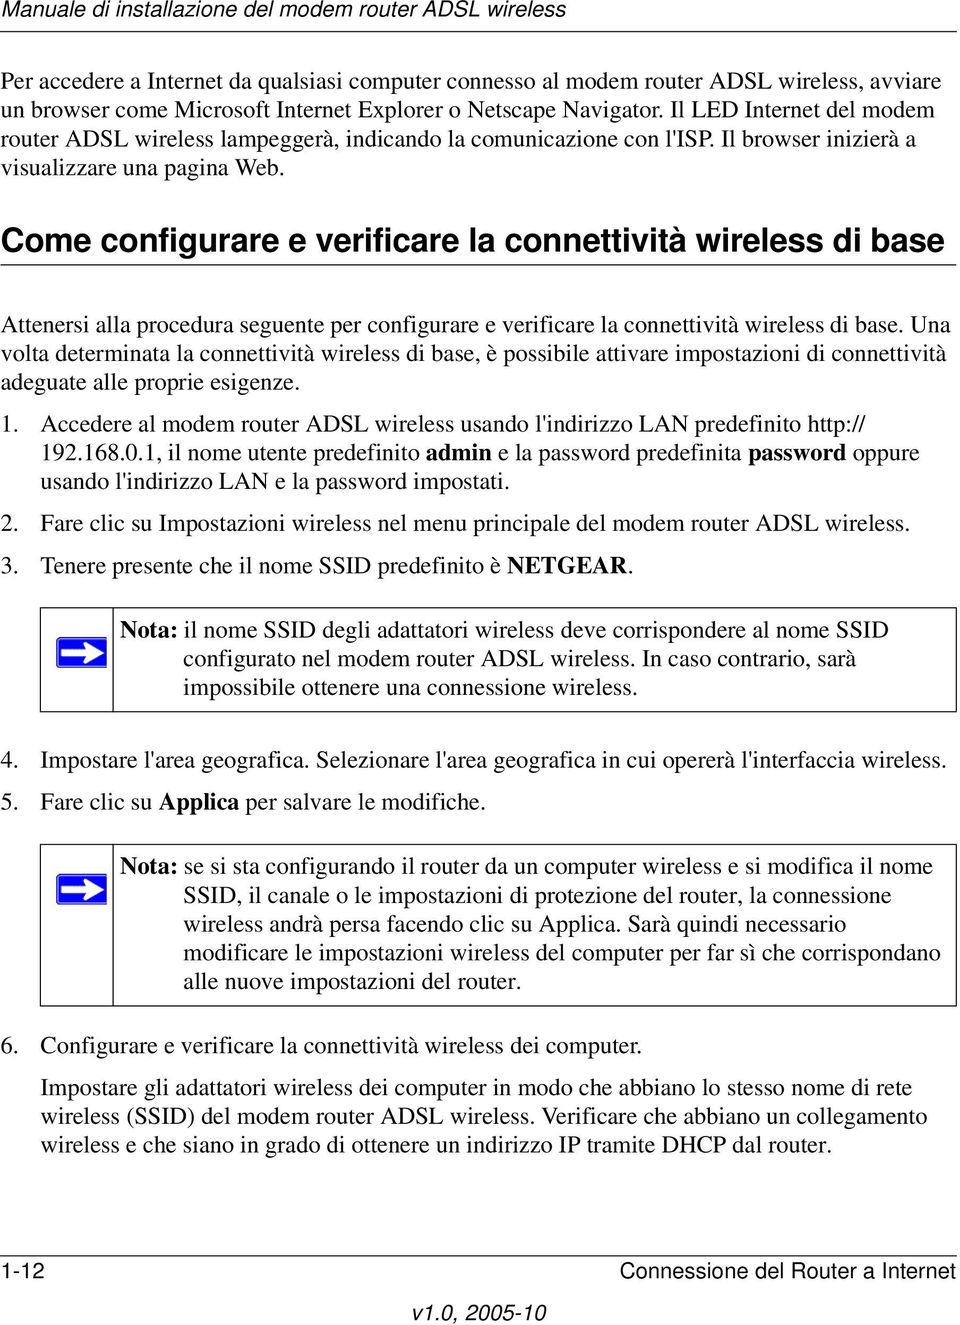 Come configurare e verificare la connettività wireless di base Attenersi alla procedura seguente per configurare e verificare la connettività wireless di base.